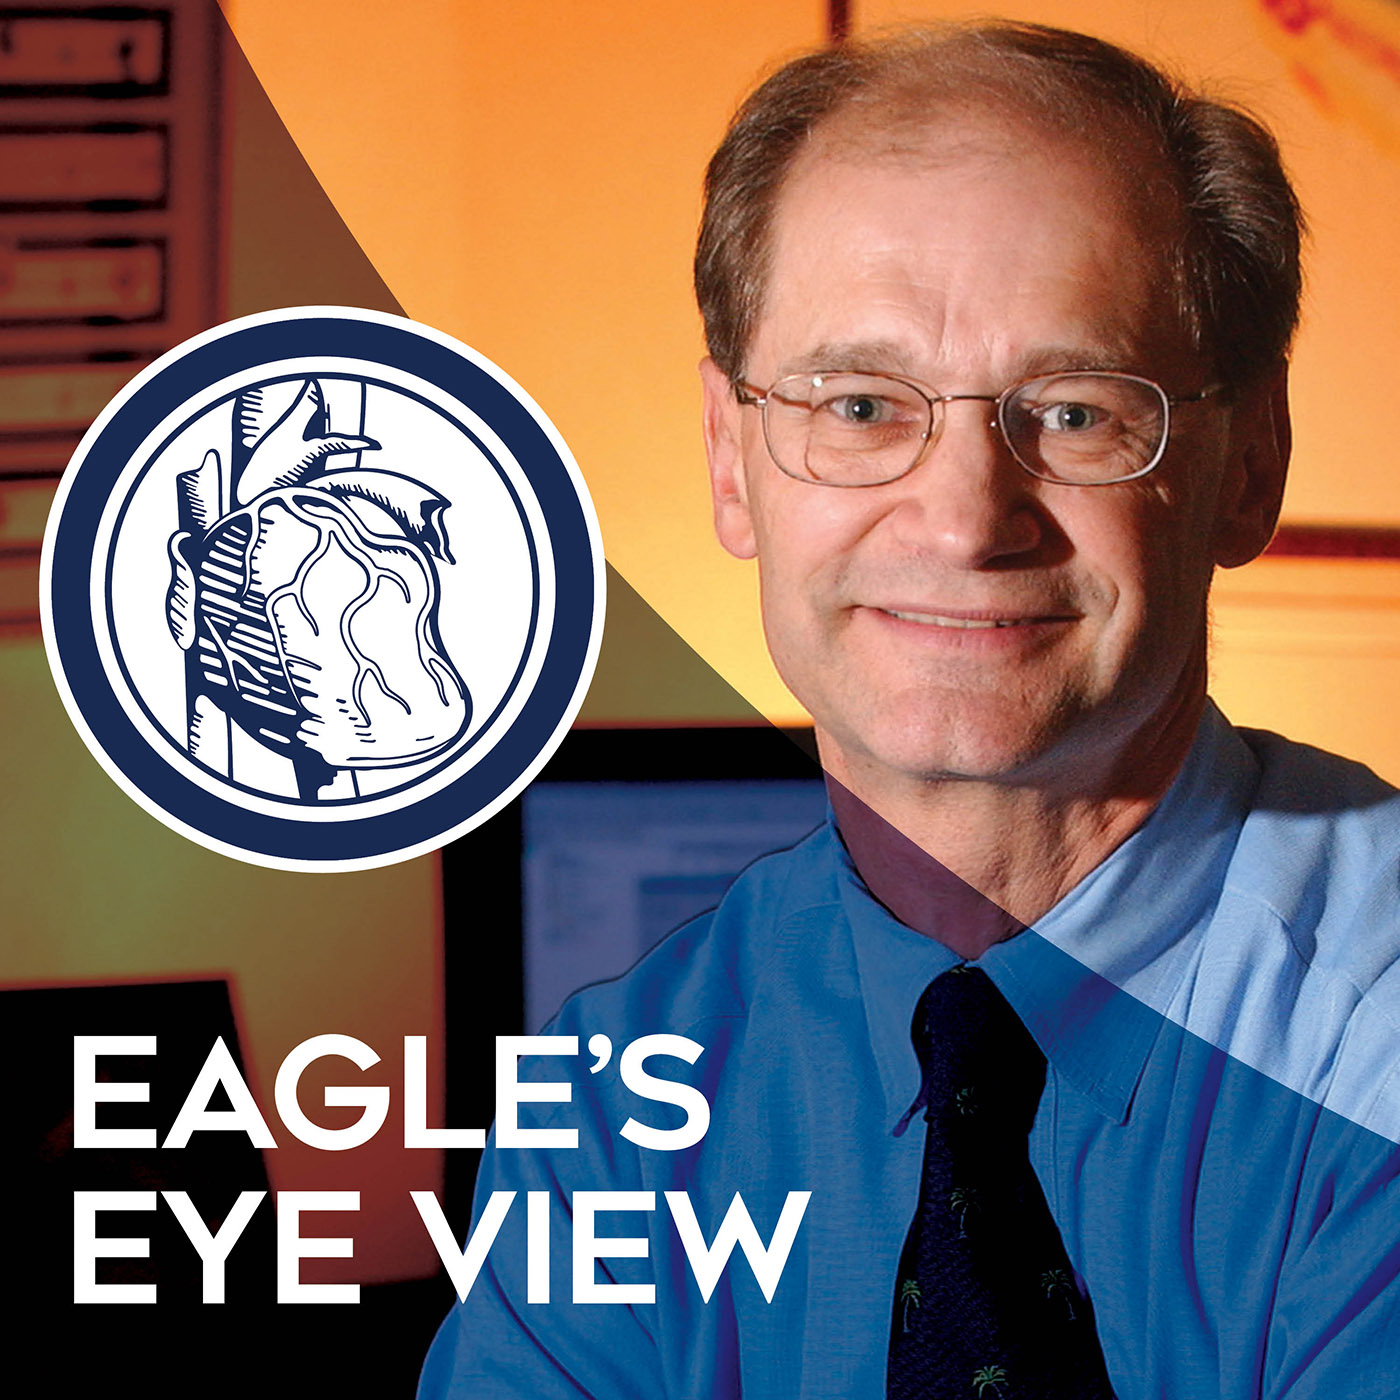 Eagle's Eye View